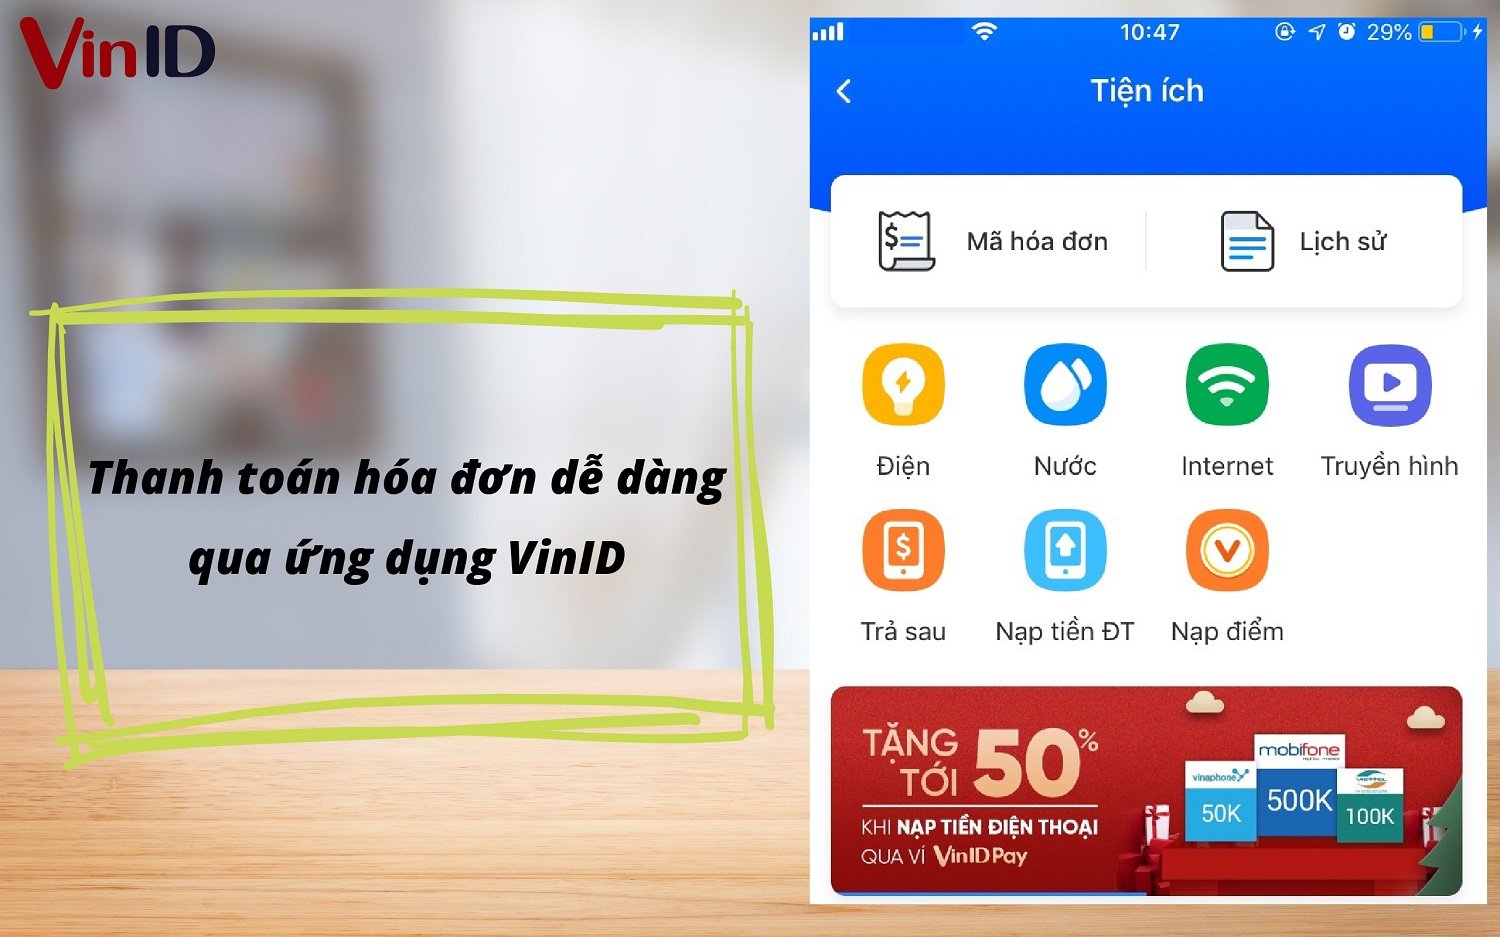 Tính năng Vinhomes trên app VinID